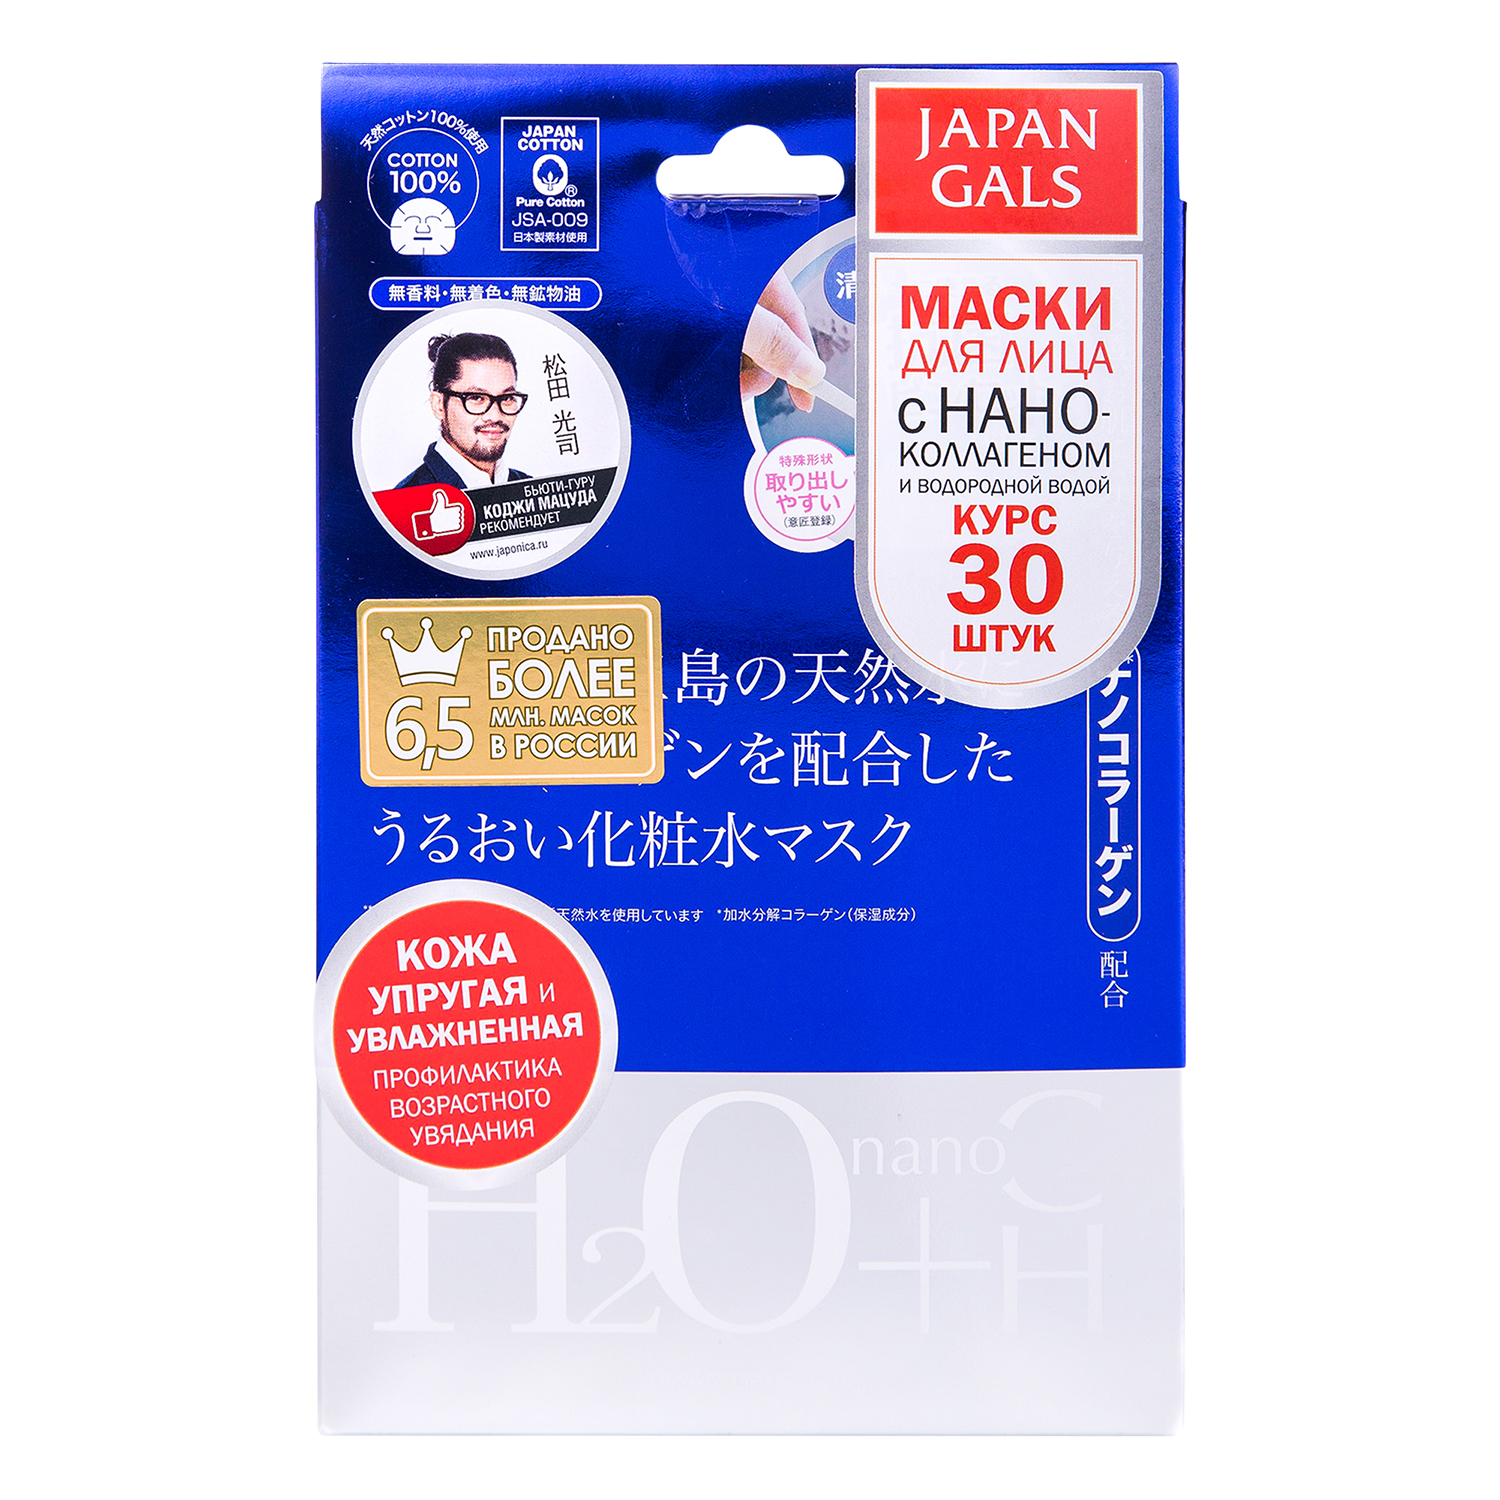 Japan Gals Набор масок для лица 